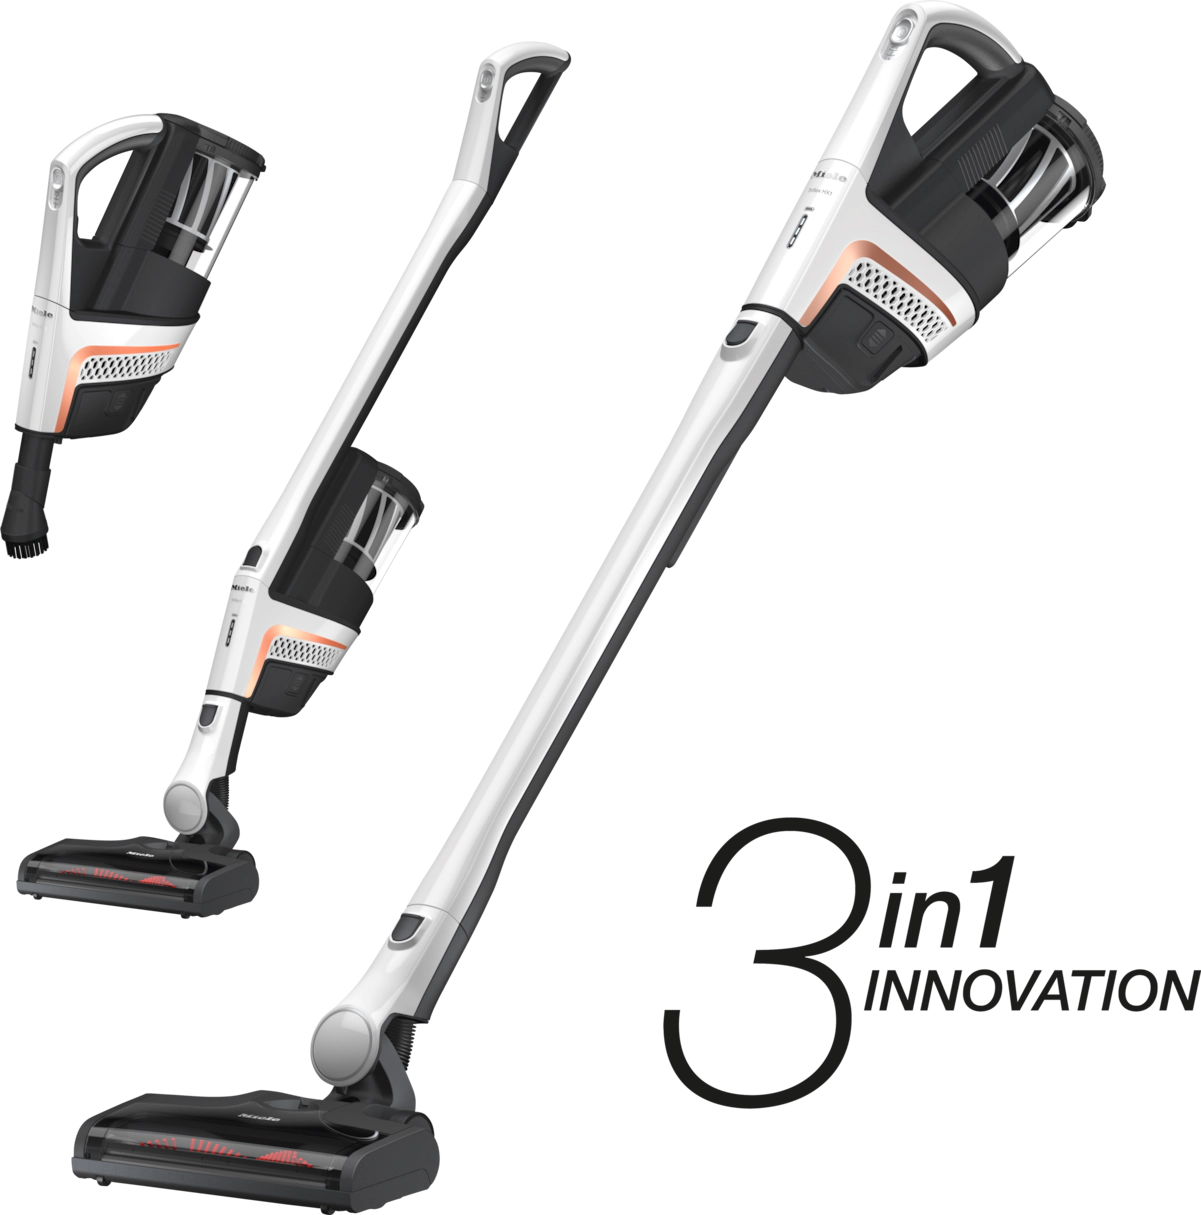 Miele Triflex HX1 3-In-1 Cordless Stick Vacuum - SMUL0 - Lotus White